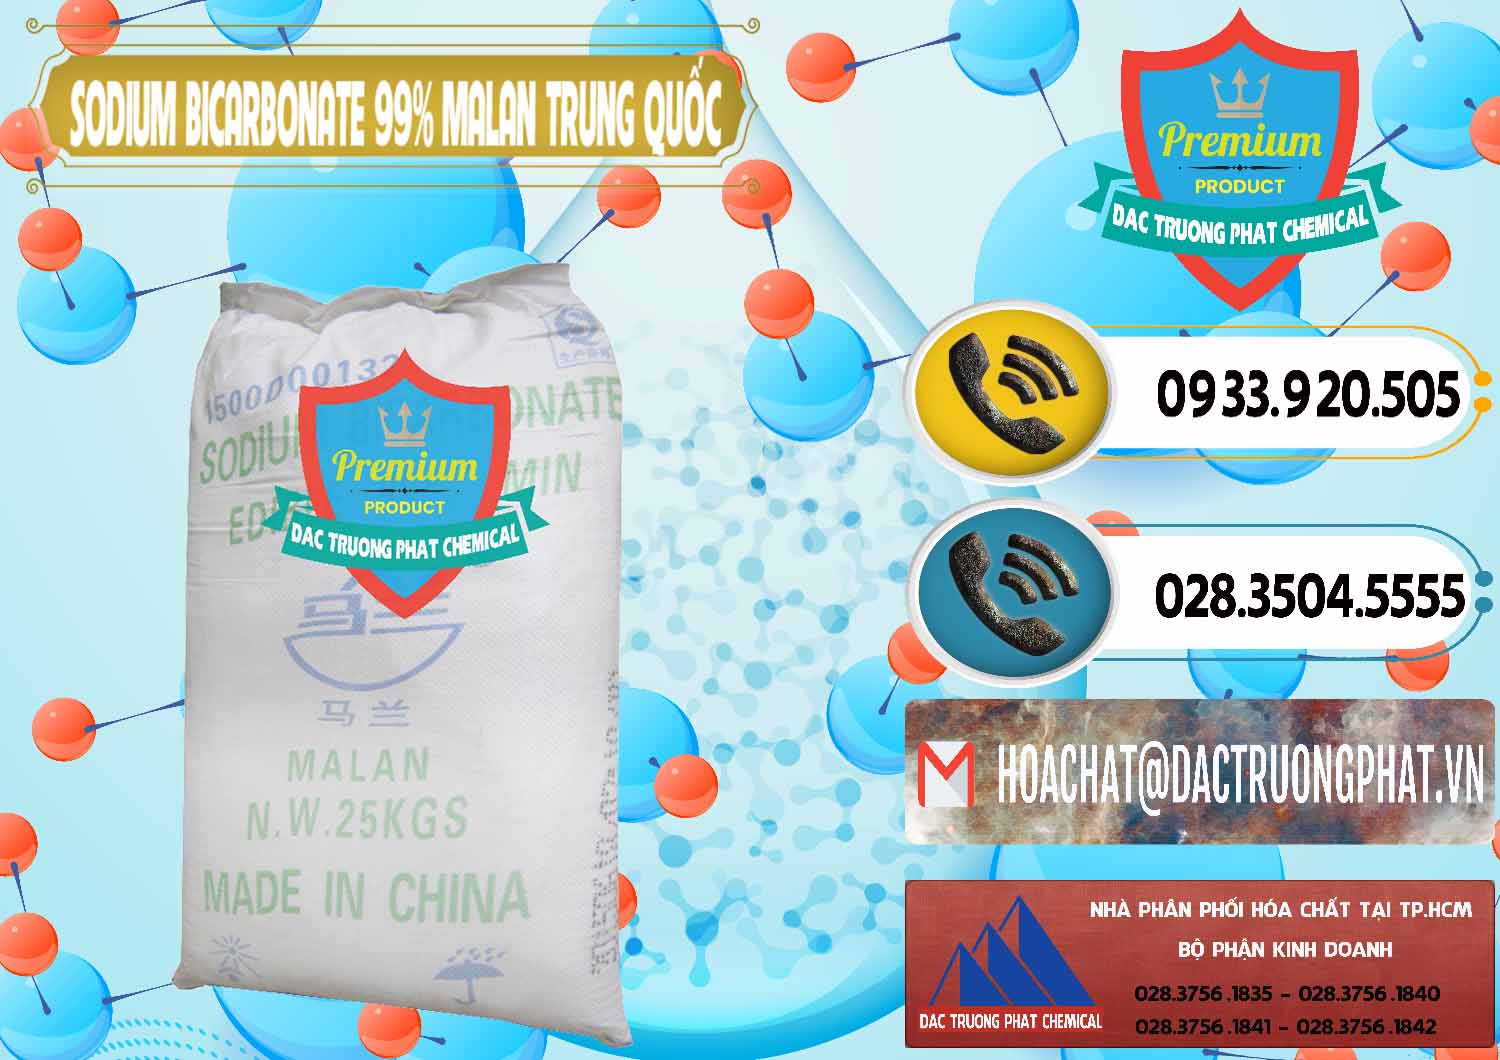 Cty chuyên bán và cung ứng Sodium Bicarbonate – Bicar NaHCO3 Malan Trung Quốc China - 0218 - Cty bán ( phân phối ) hóa chất tại TP.HCM - hoachatdetnhuom.vn